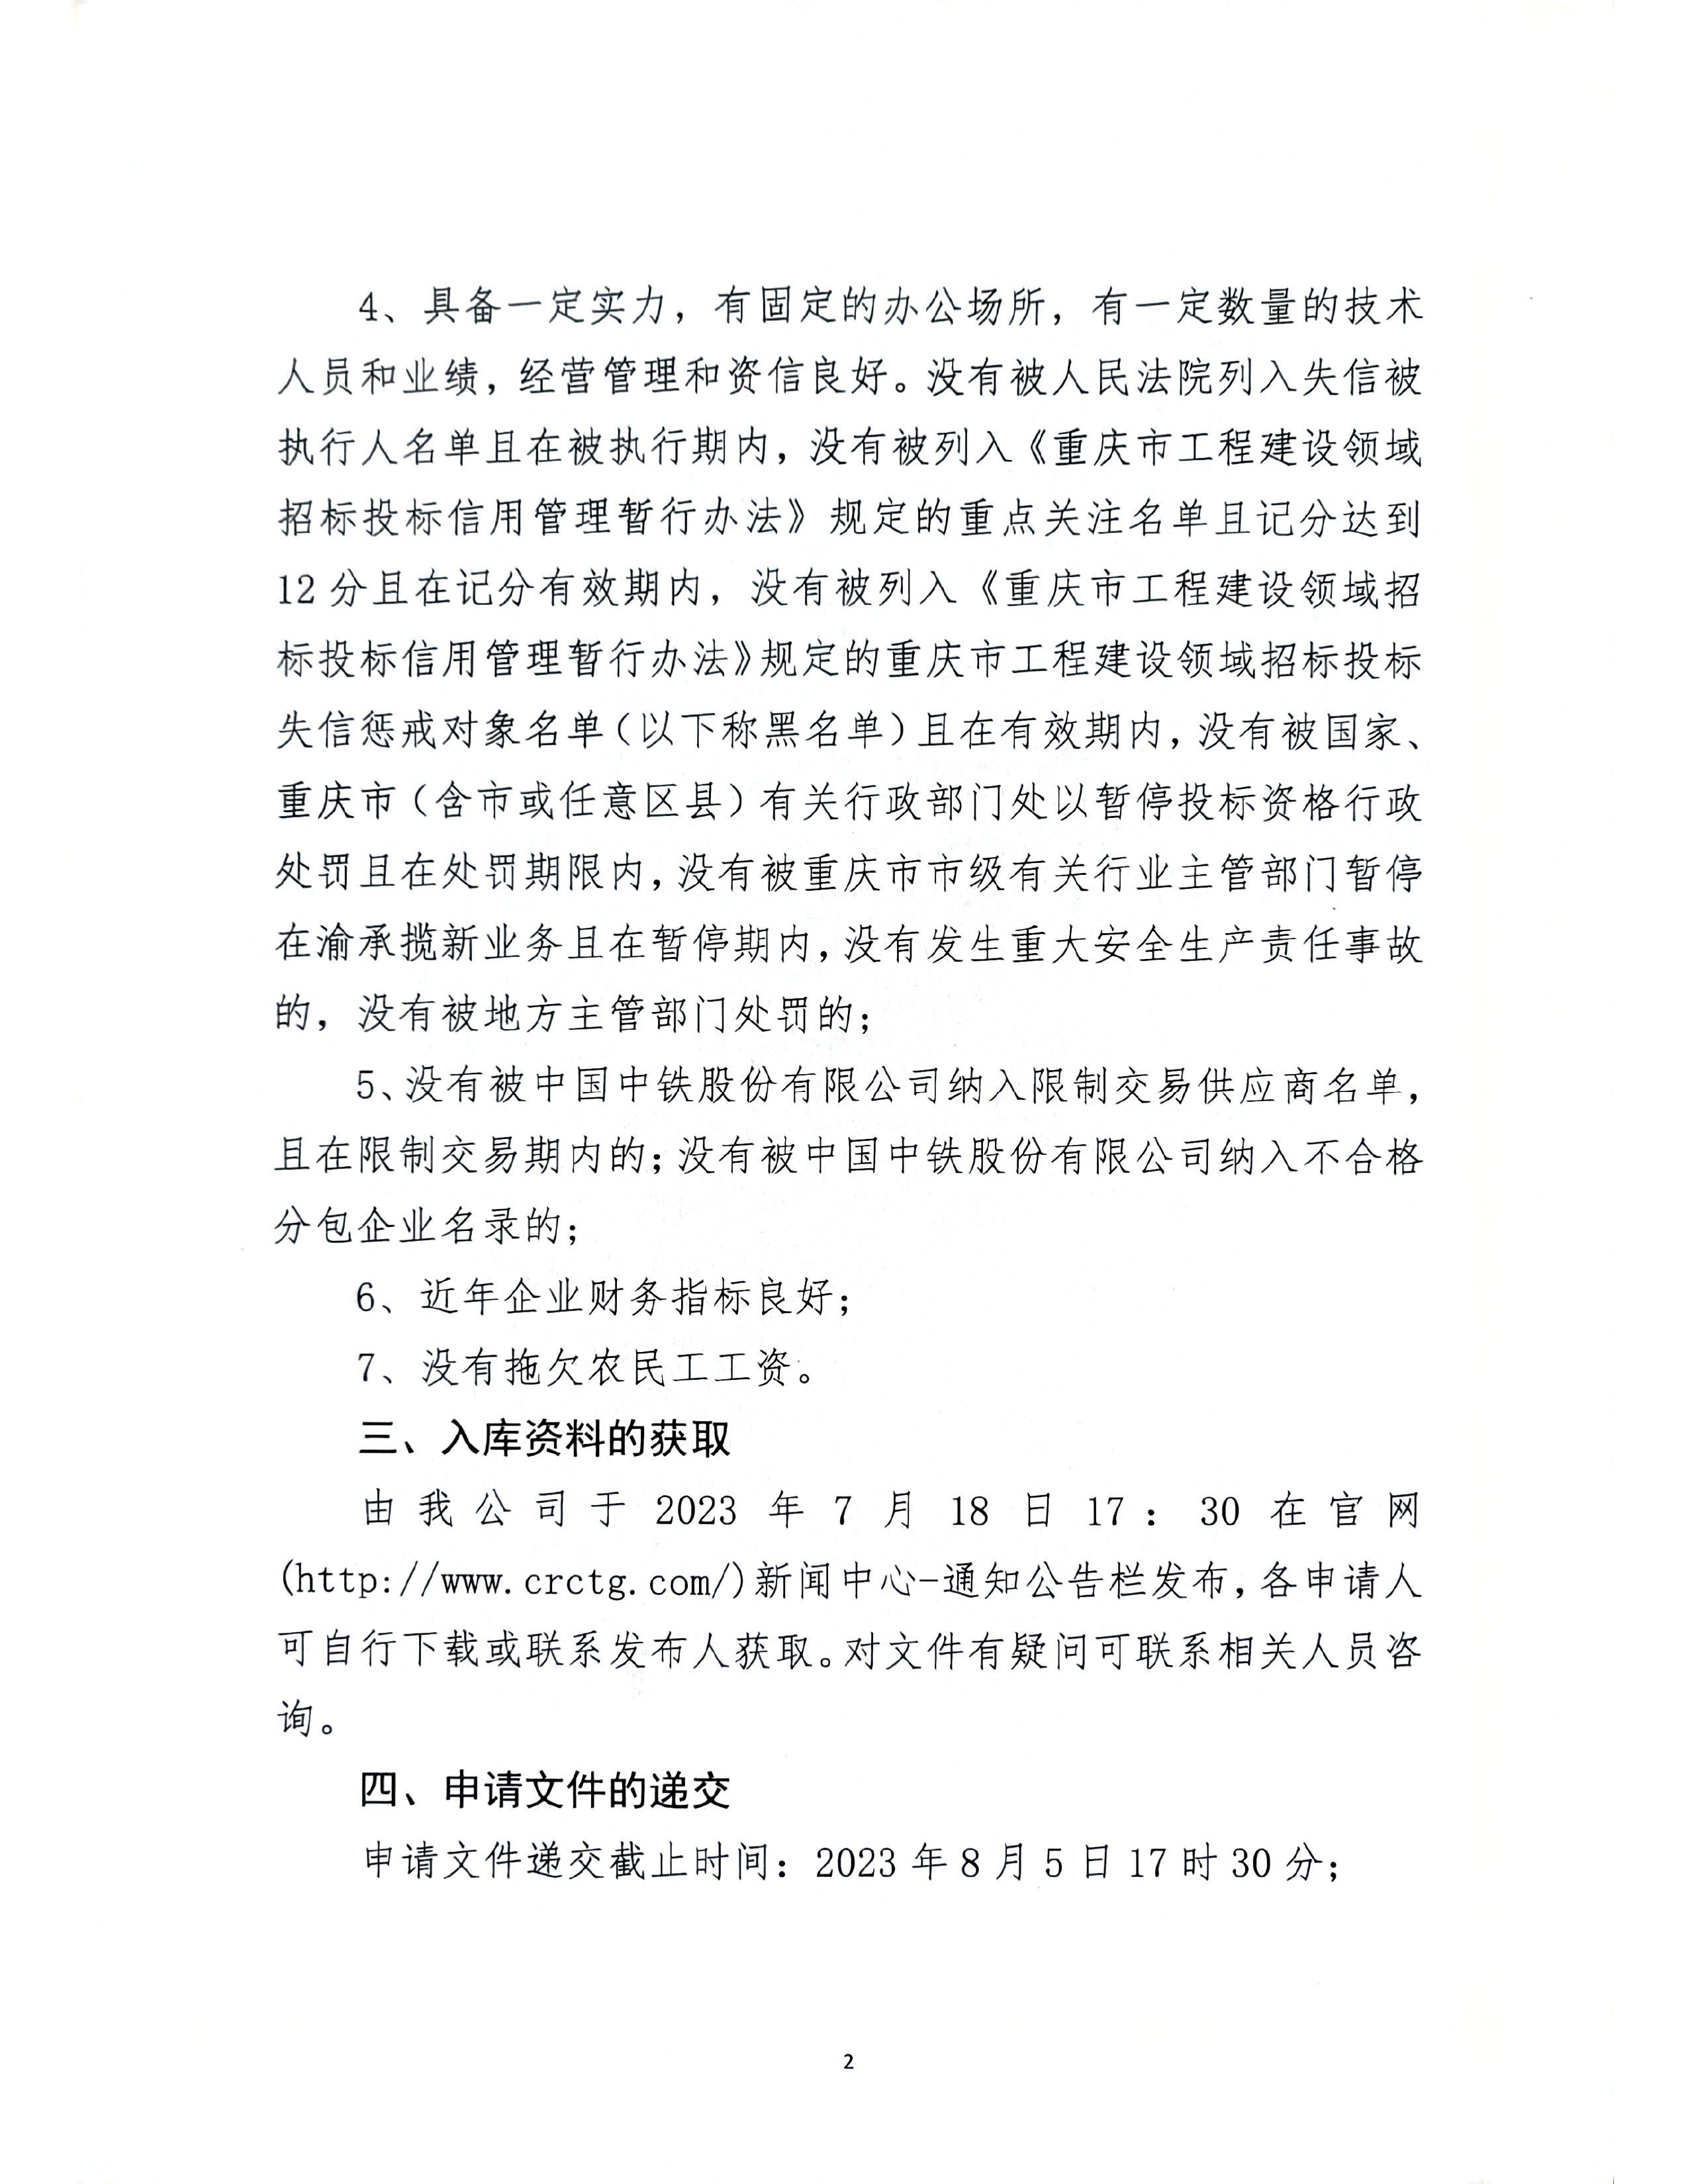 中铁长江交通设计集团有限公司关于开展2023年度总承包项目供方入库的通知_page-0002